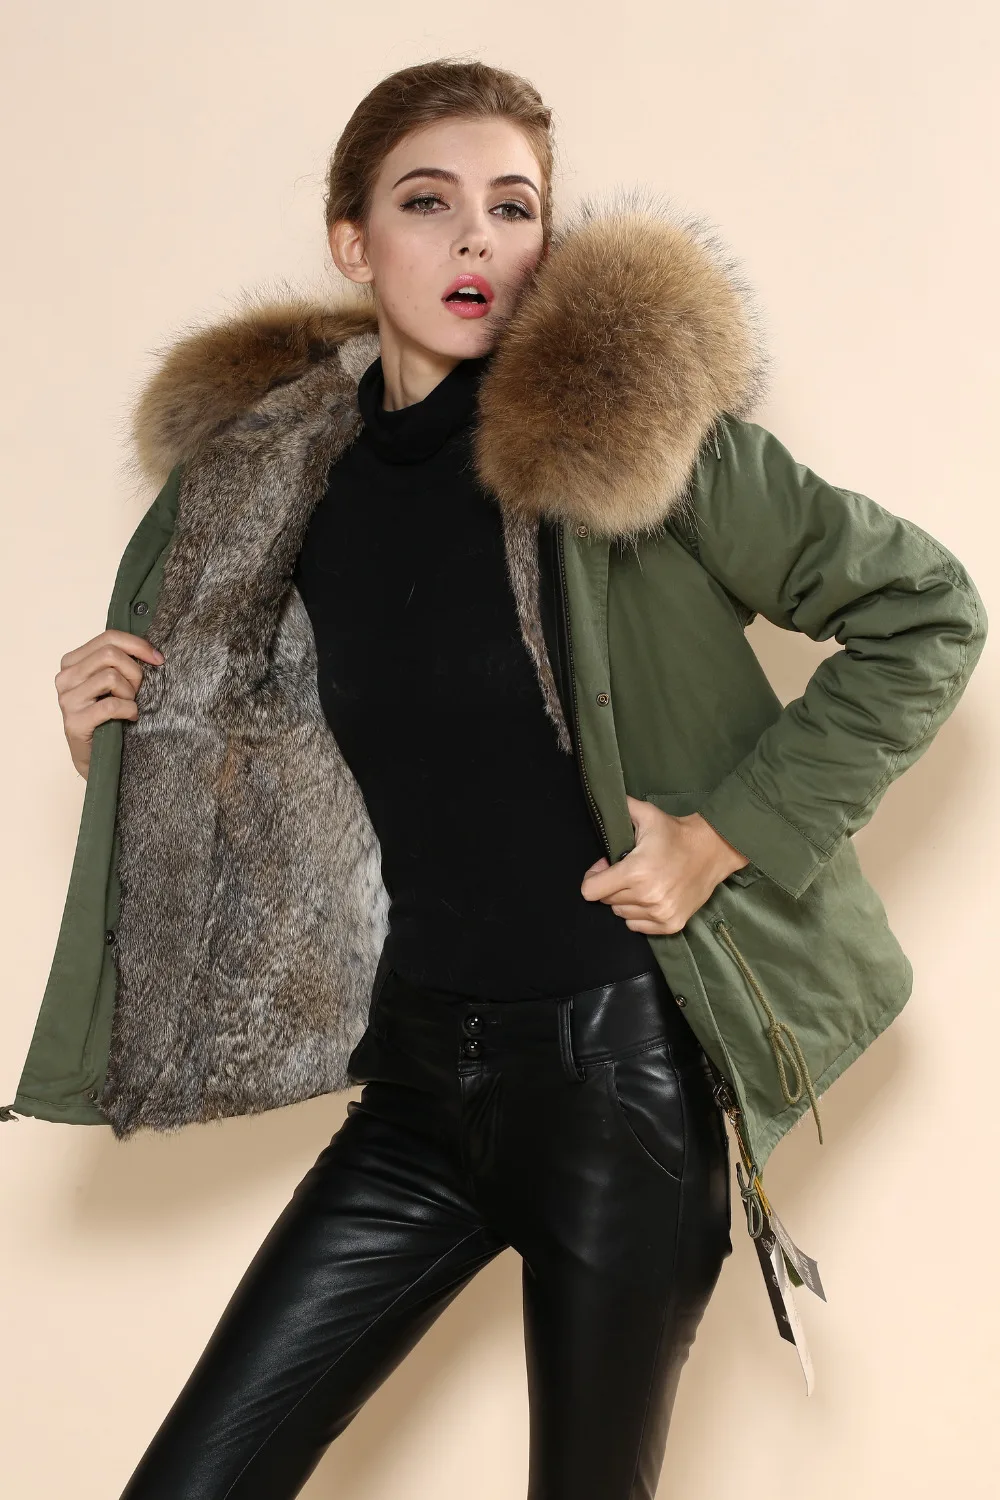 Название бренда популярны в Корее Star Mrs Для женщин Мода Geniune Мех животных пальто mr Мех животных S